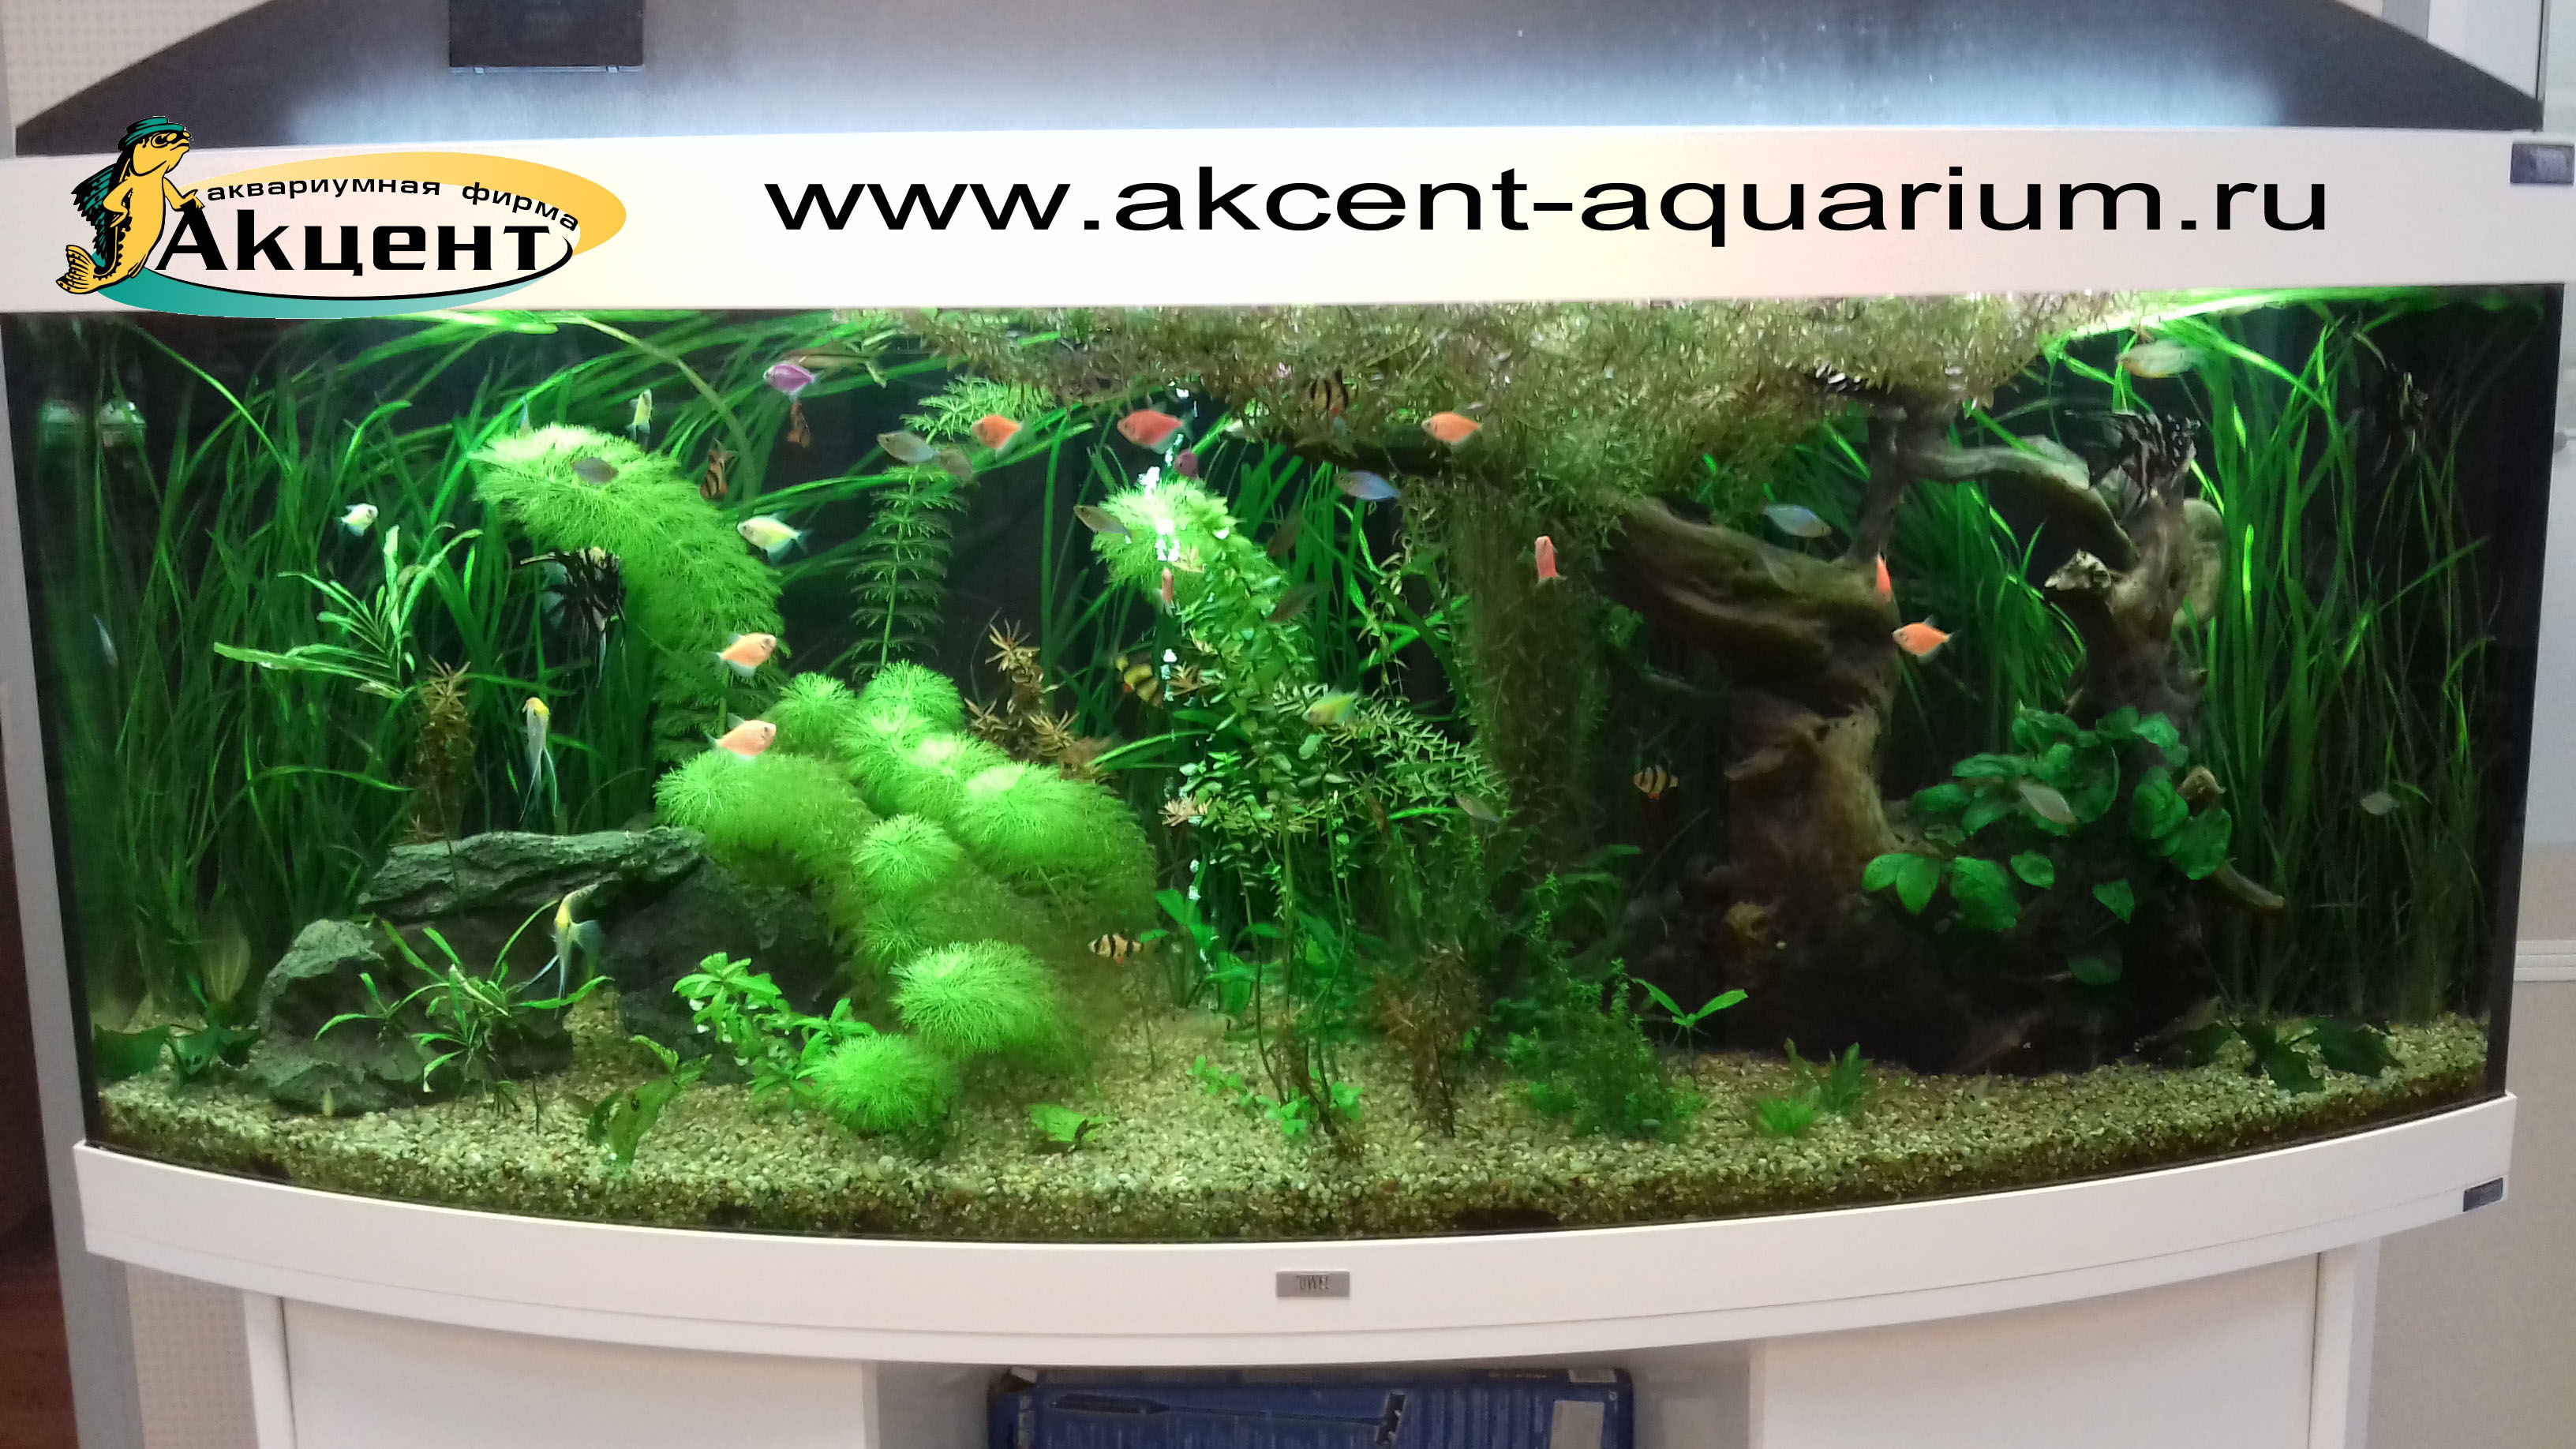 Акцент-аквариум,аквариум акриловый 450 литров с гнутым передним стеклом, живые растения, коряга